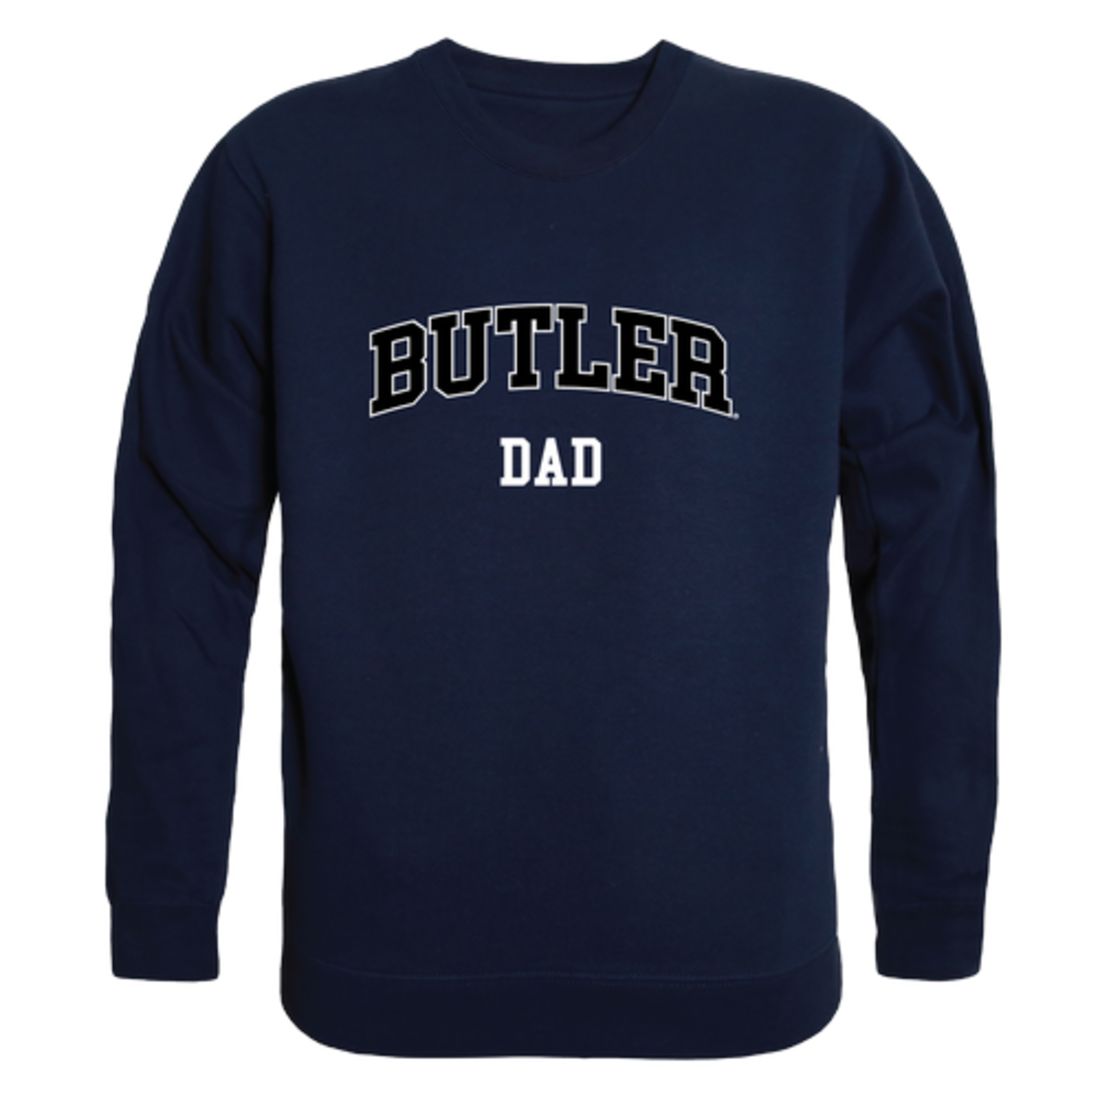 Butler University Bulldog Dad Fleece Crewneck Pullover Sweatshirt Heather Grey-Campus-Wardrobe